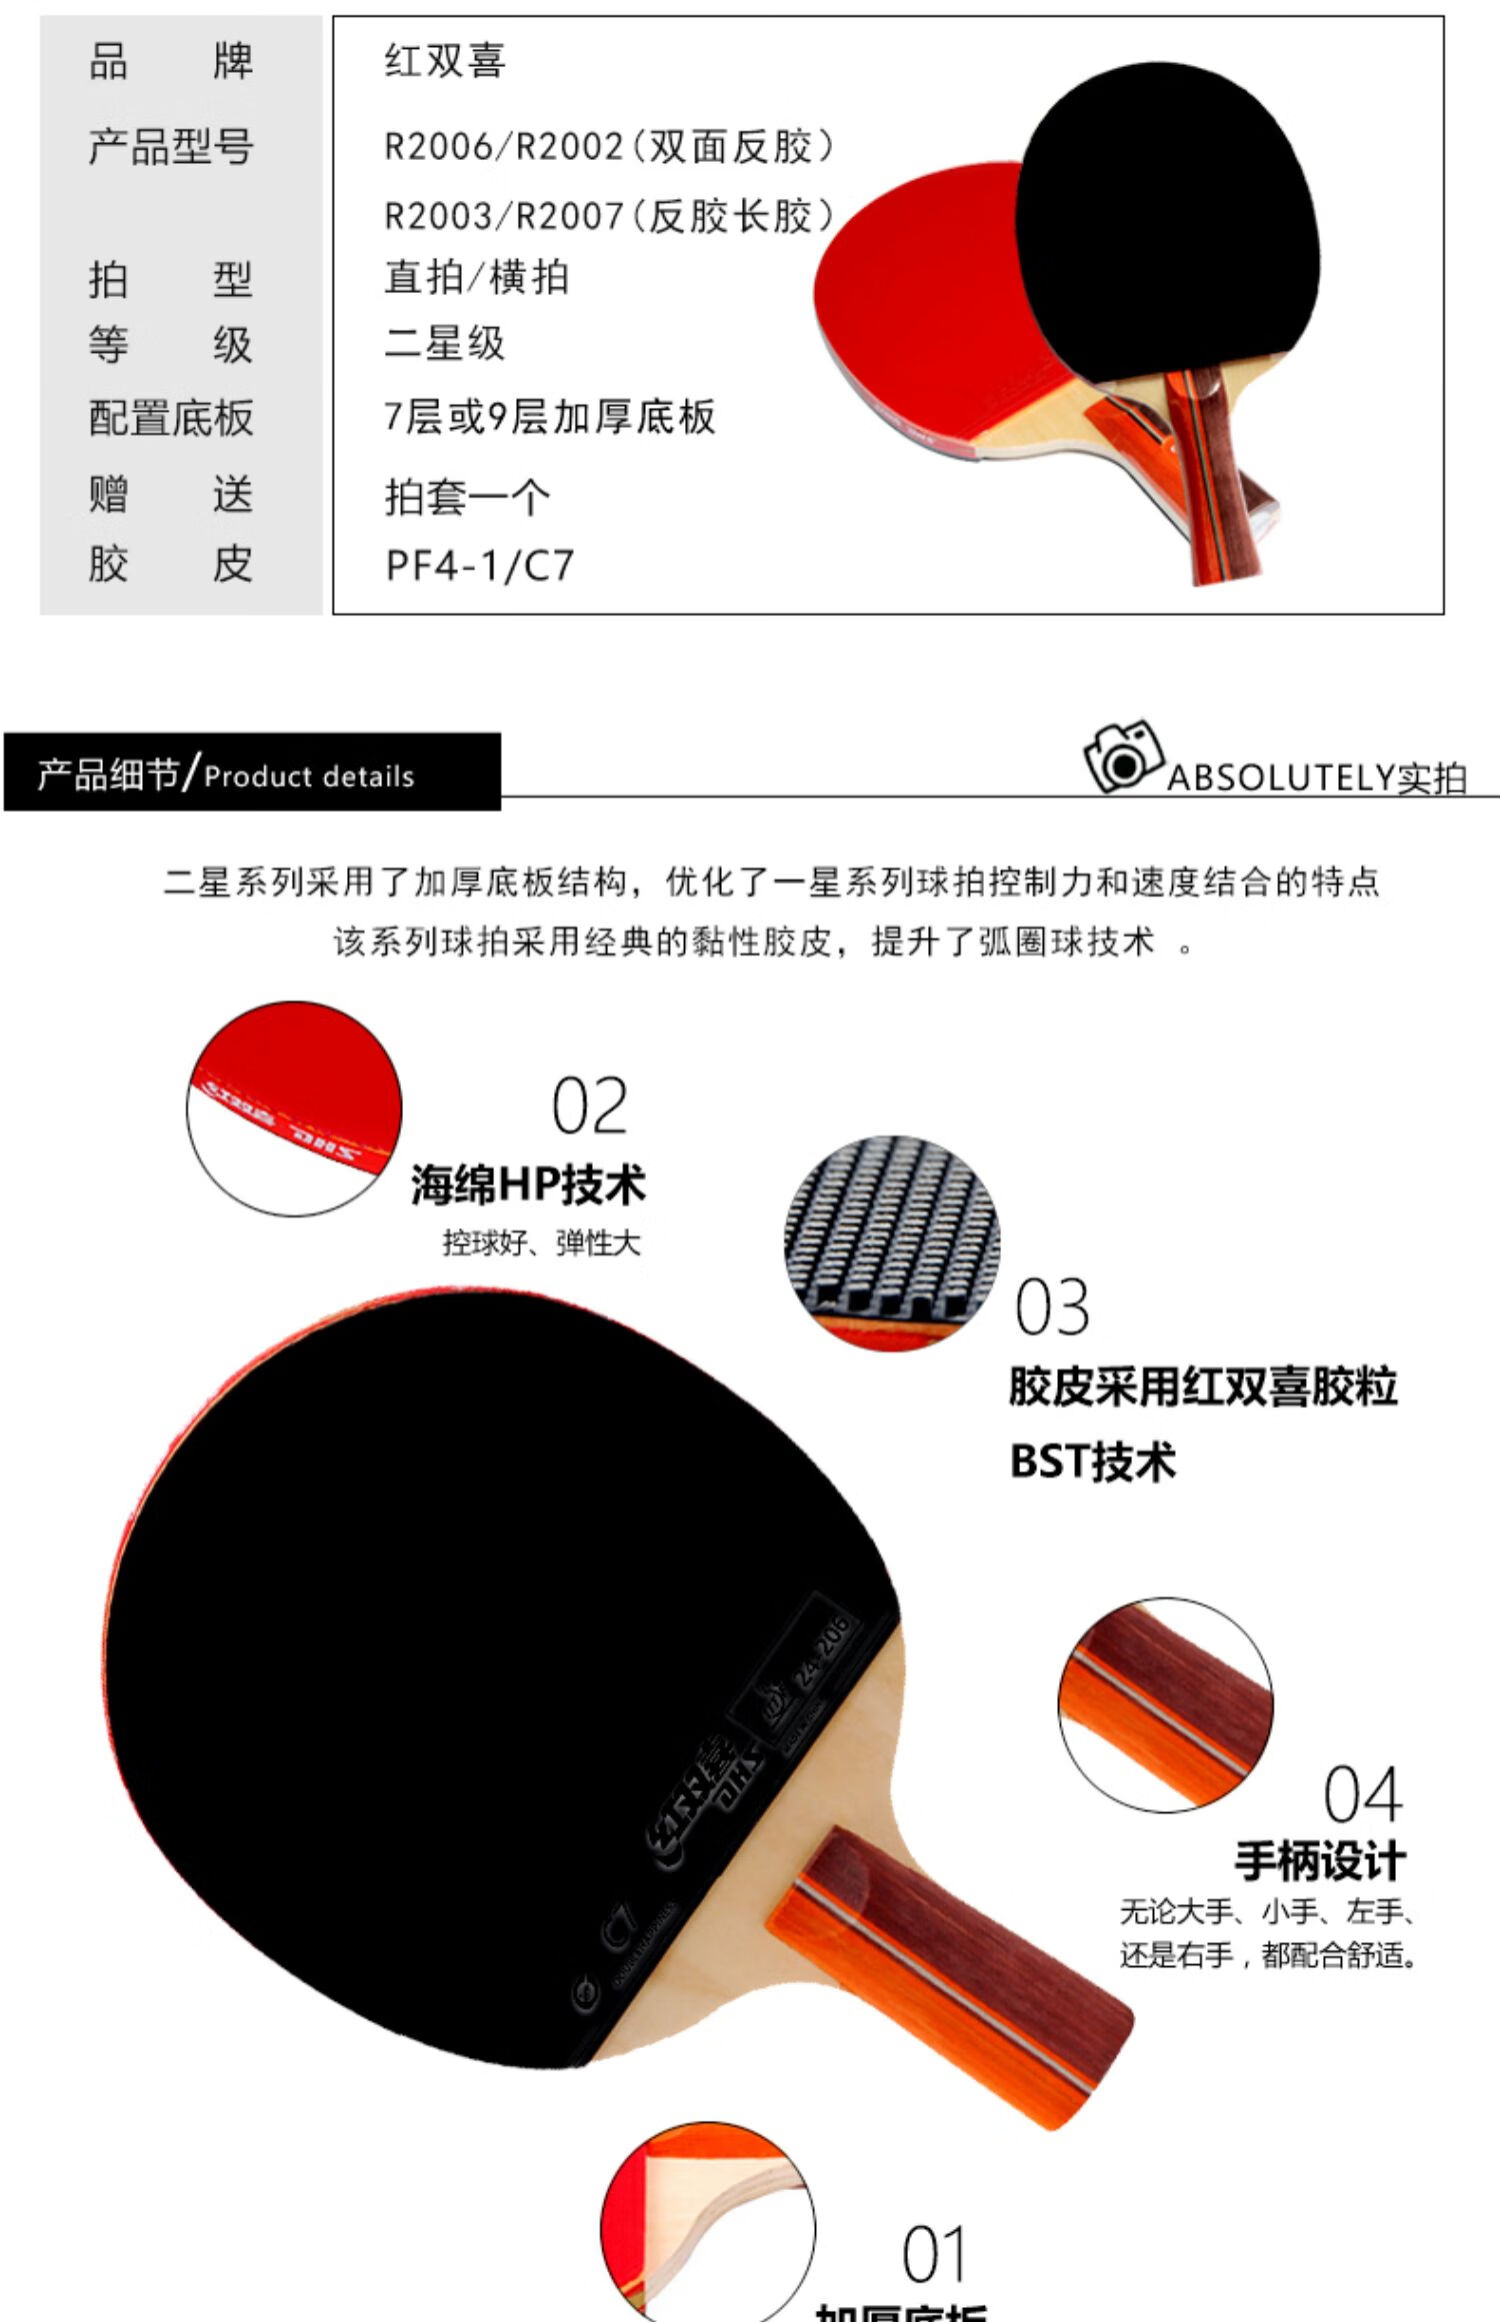 r6002横板 拍套球3膜2 品牌: 红双喜(dhs) 商品名称:红双喜乒乓球拍